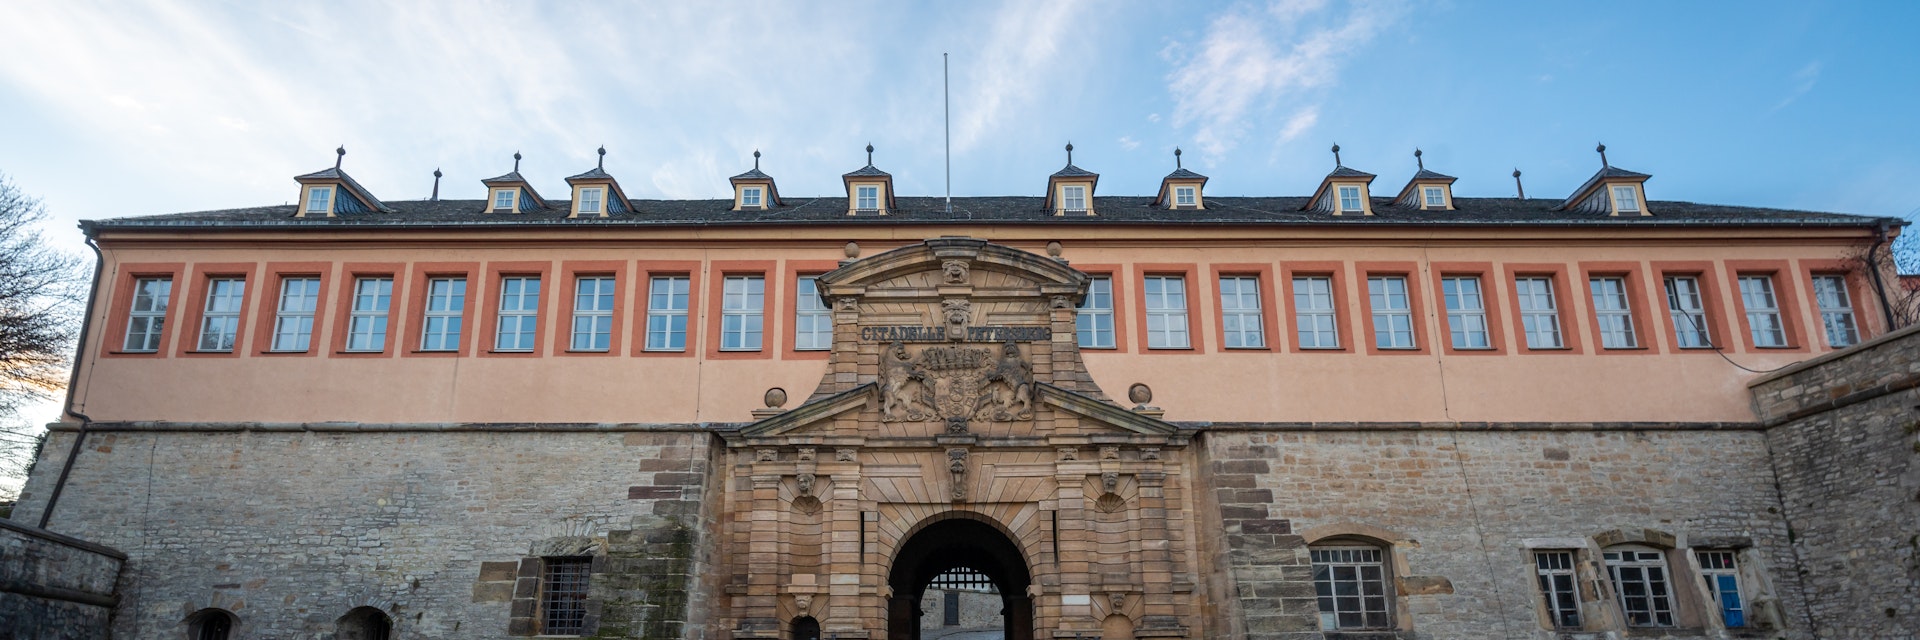 Main gate of Petersberg Citadel in Erfurt, Thuringia, Germany.